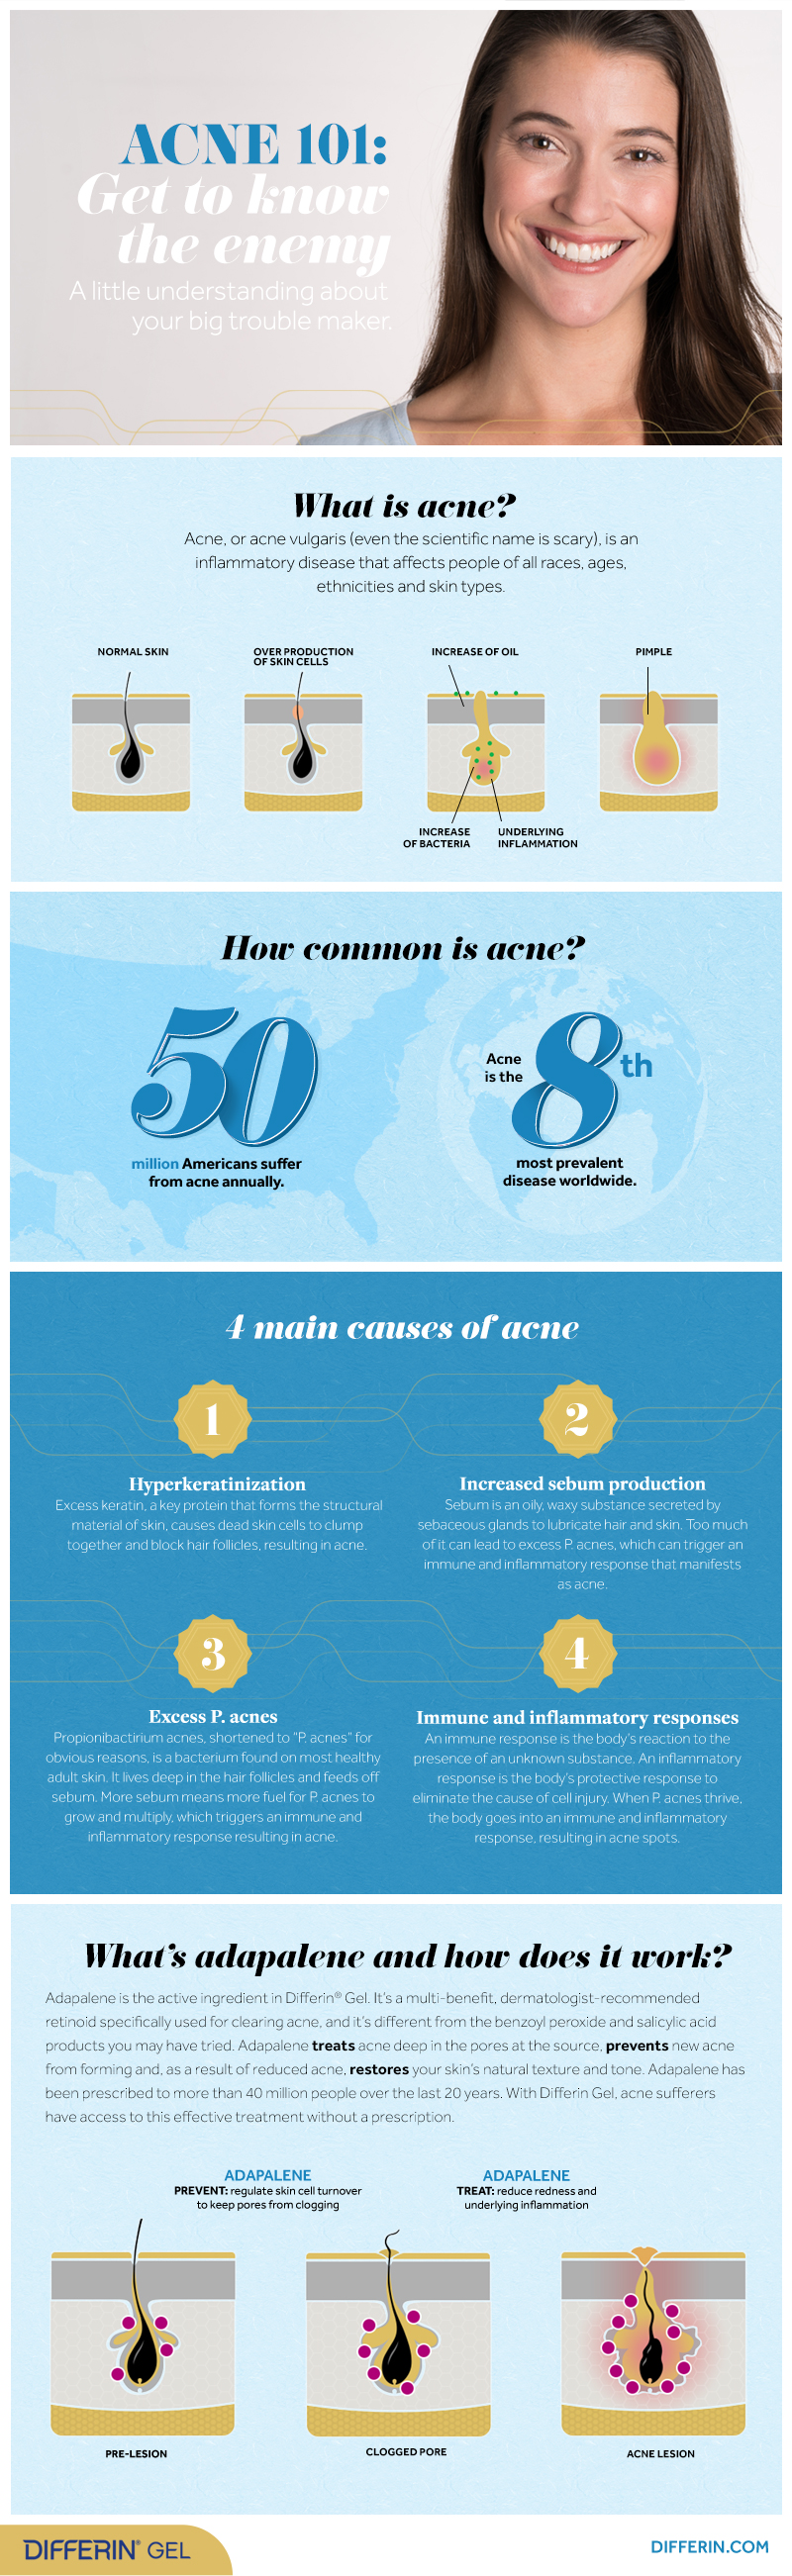 Acne 101 infographic